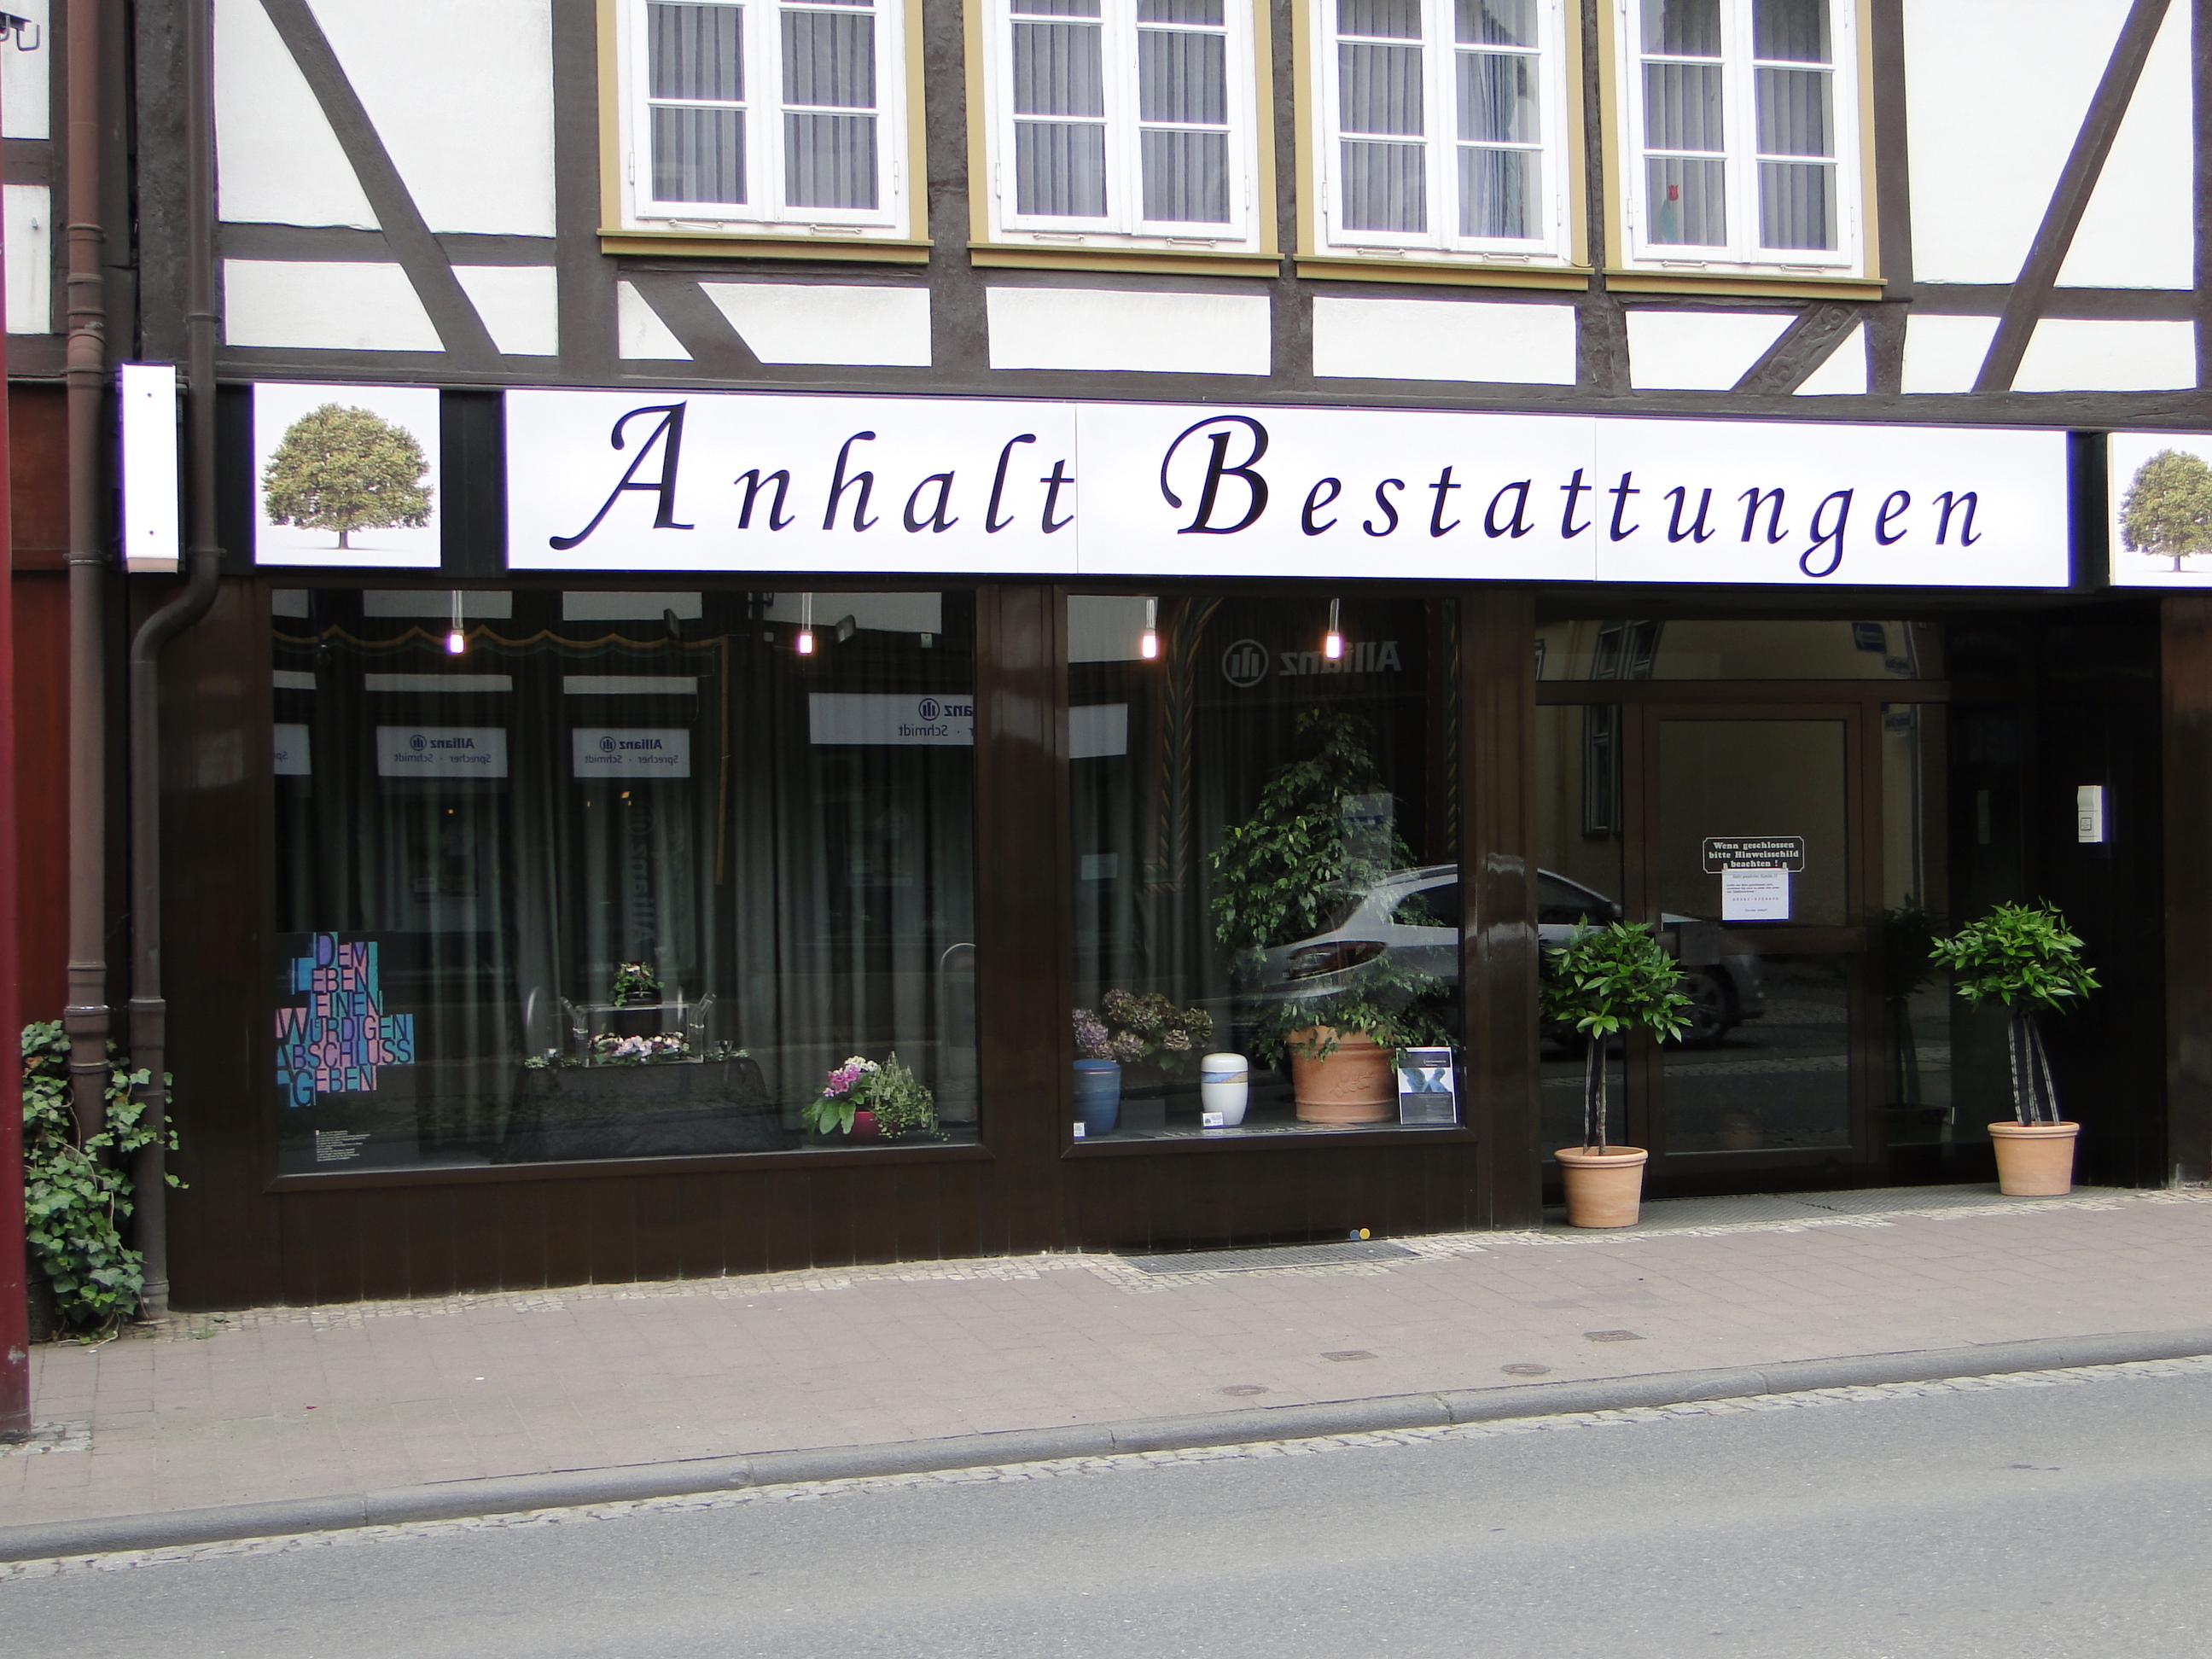 Bestattungsinstitut Anhalt in der Altendorfer Str. 32